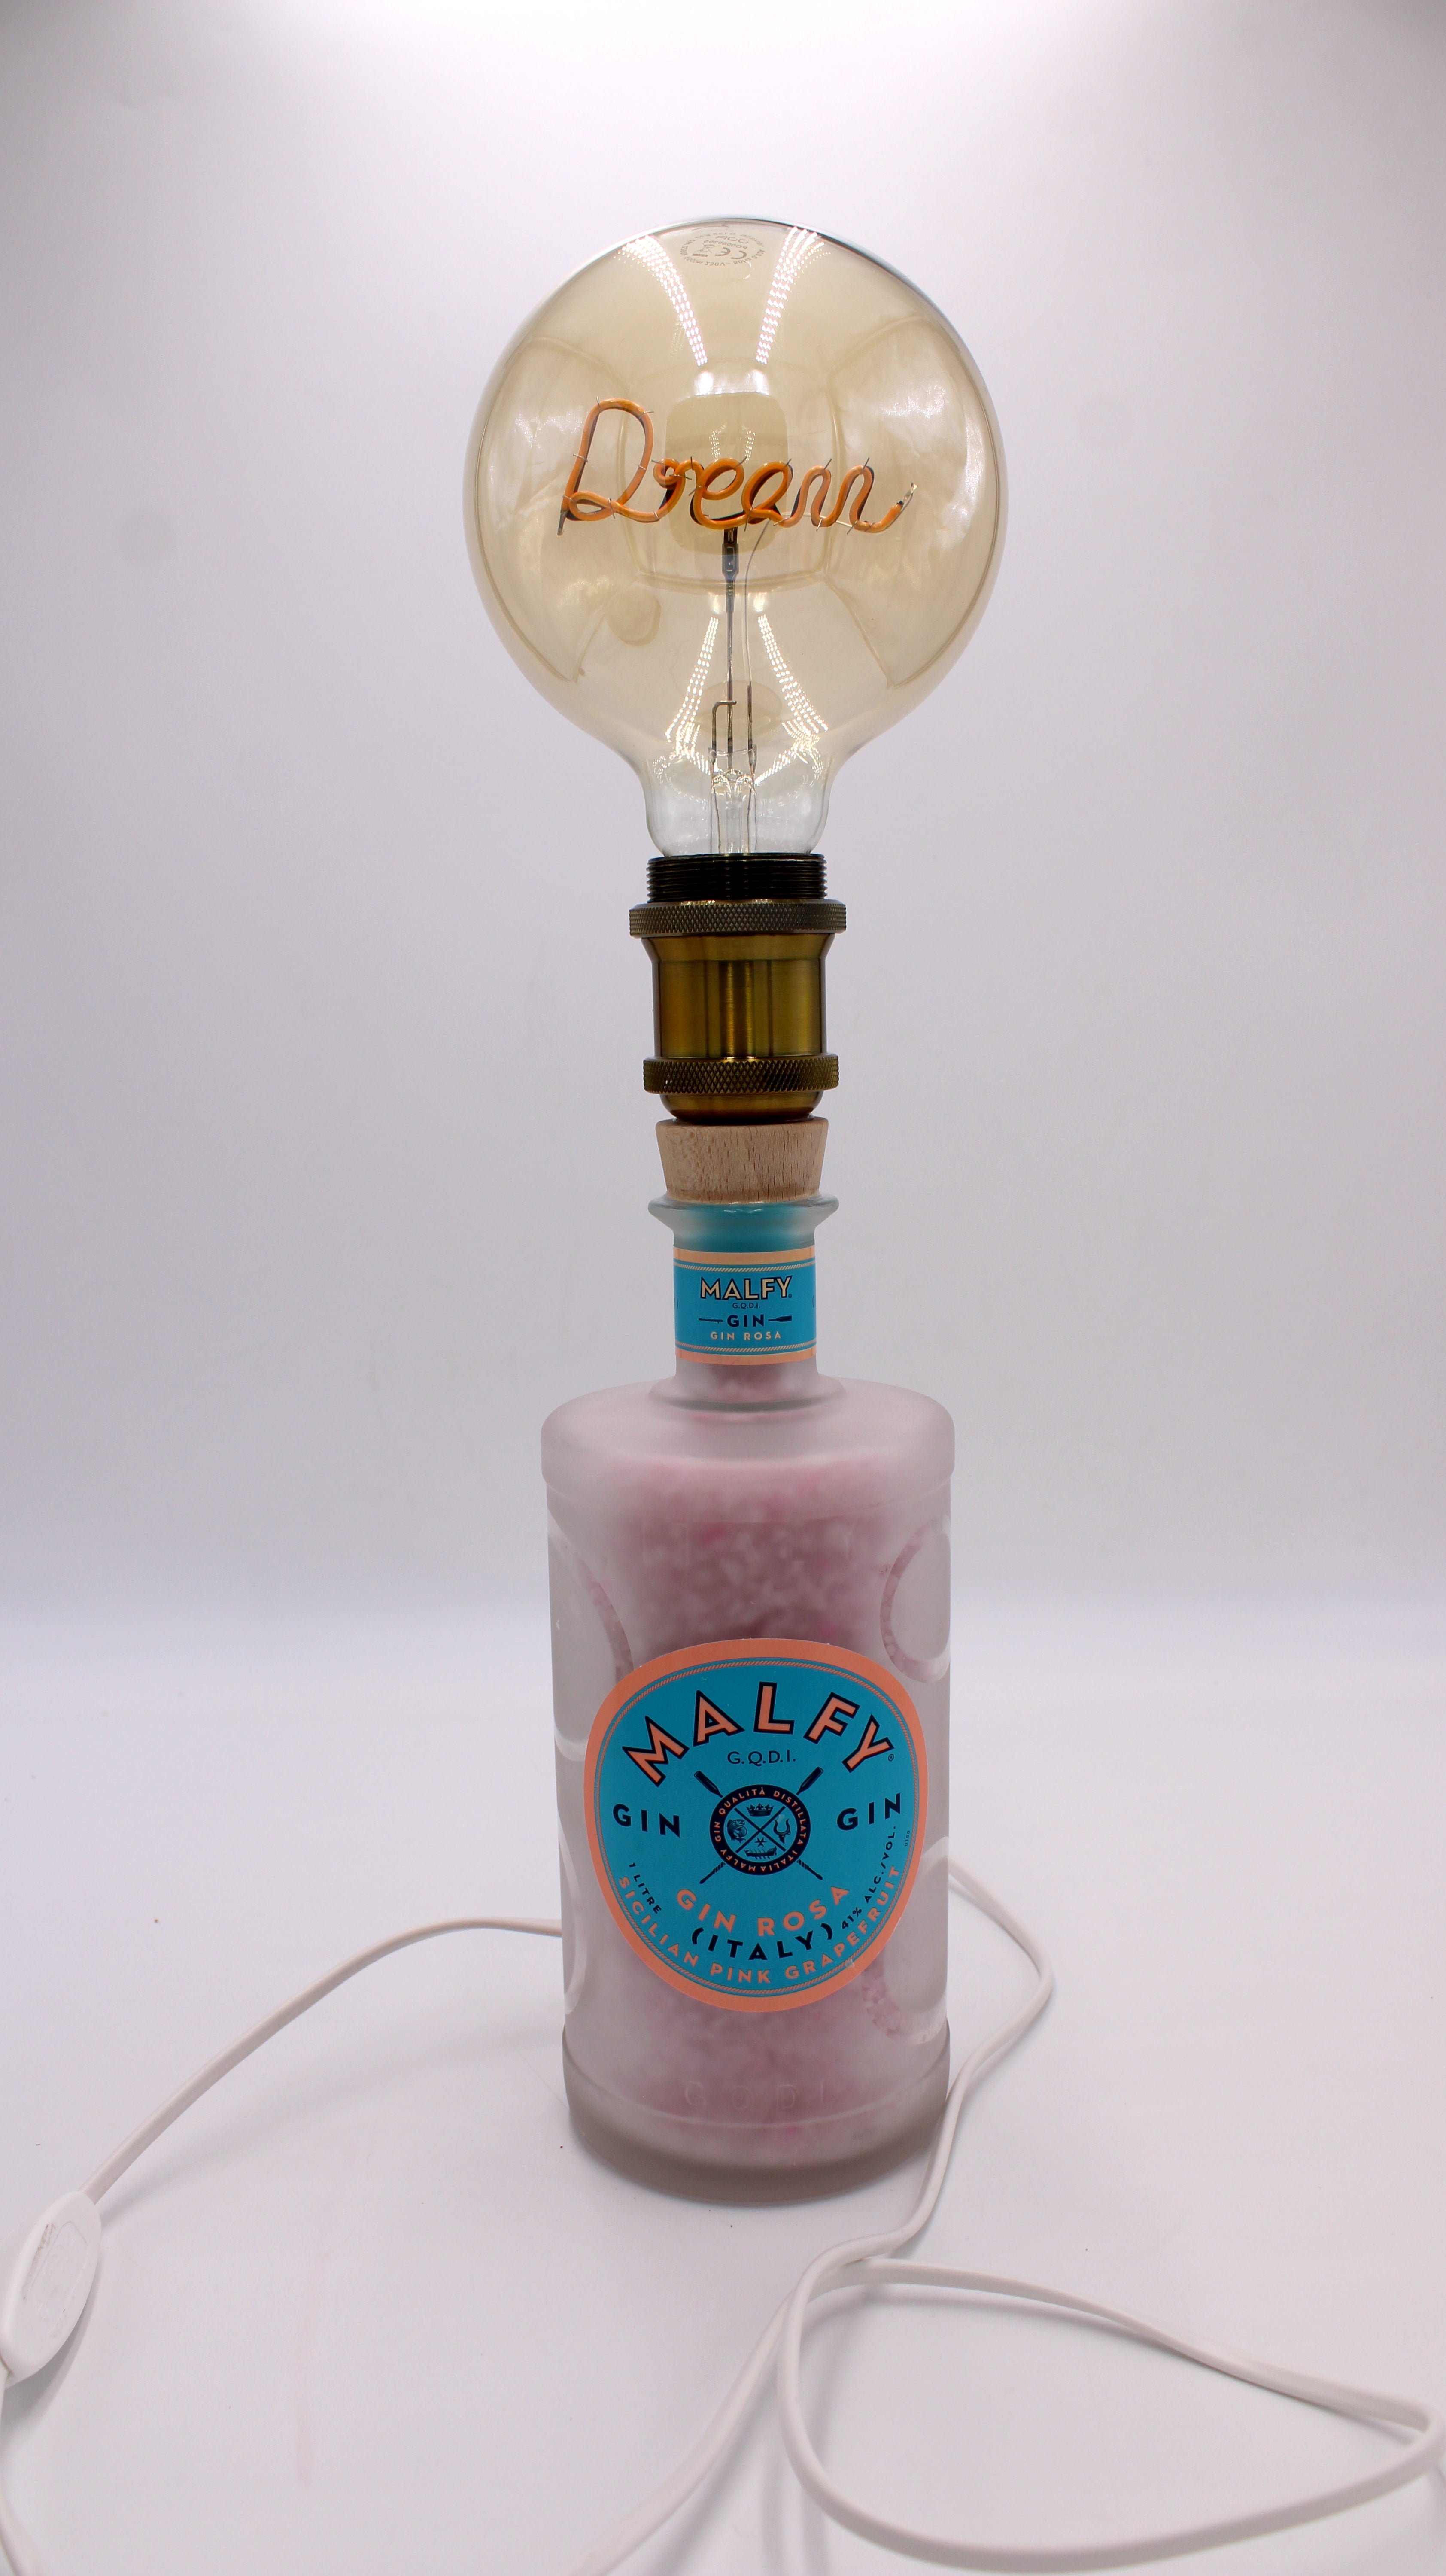 Lampada Malfy led (incisione personalizzata)